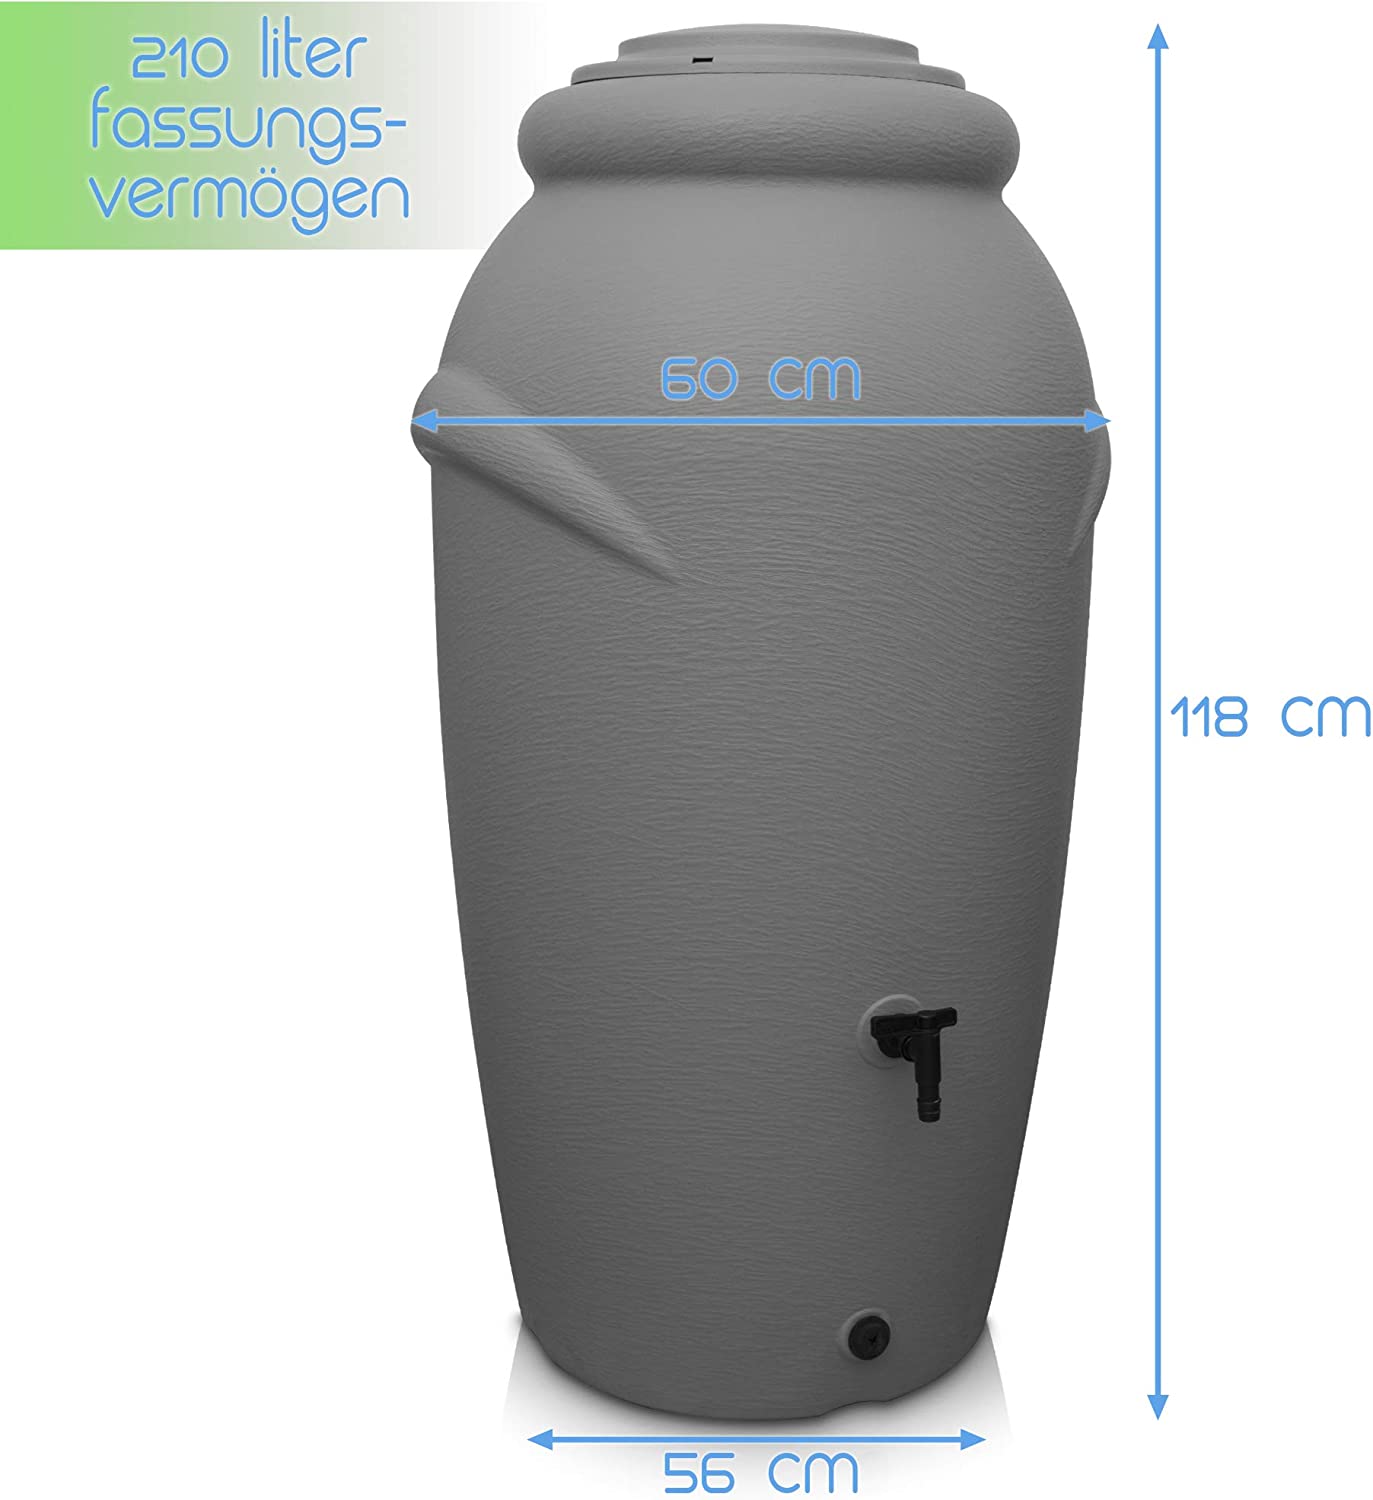 Regentonne 210/360/440 Liter [Amphore Design] Regenfass Frostsicher aus Kunststoff - Regenwassertonne mit Wasserhahn - yourcasa-de